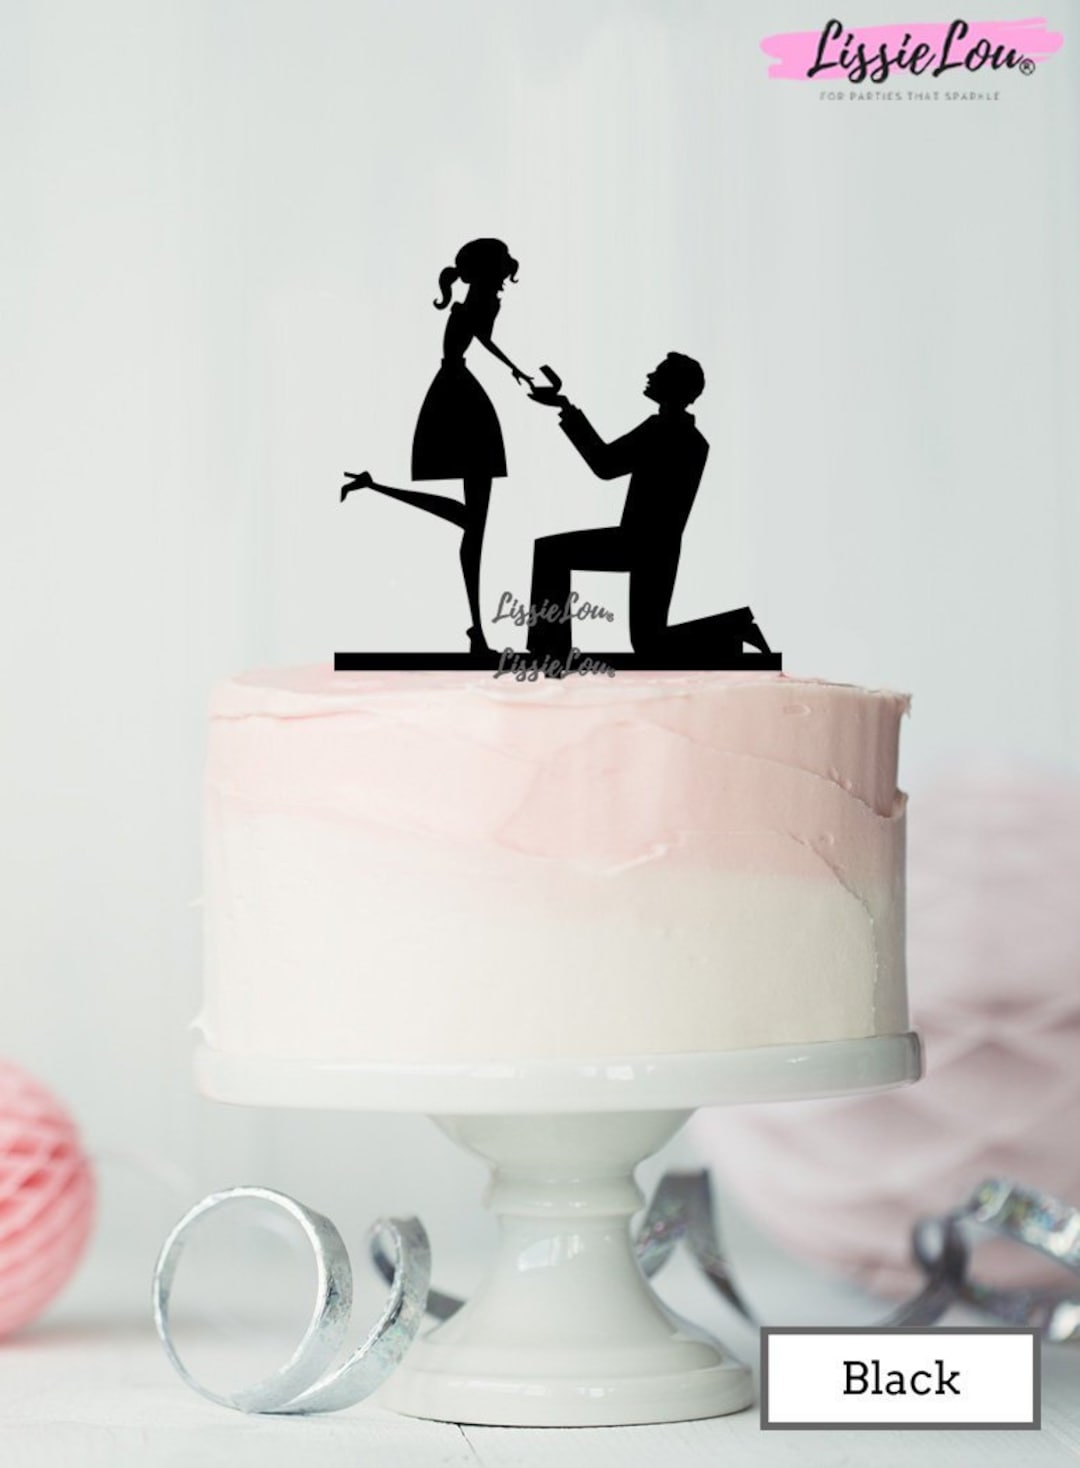 pati lover X પર: hicimos una torta POU con mi novia y salio re mogolico  expectativa / realidad  / X